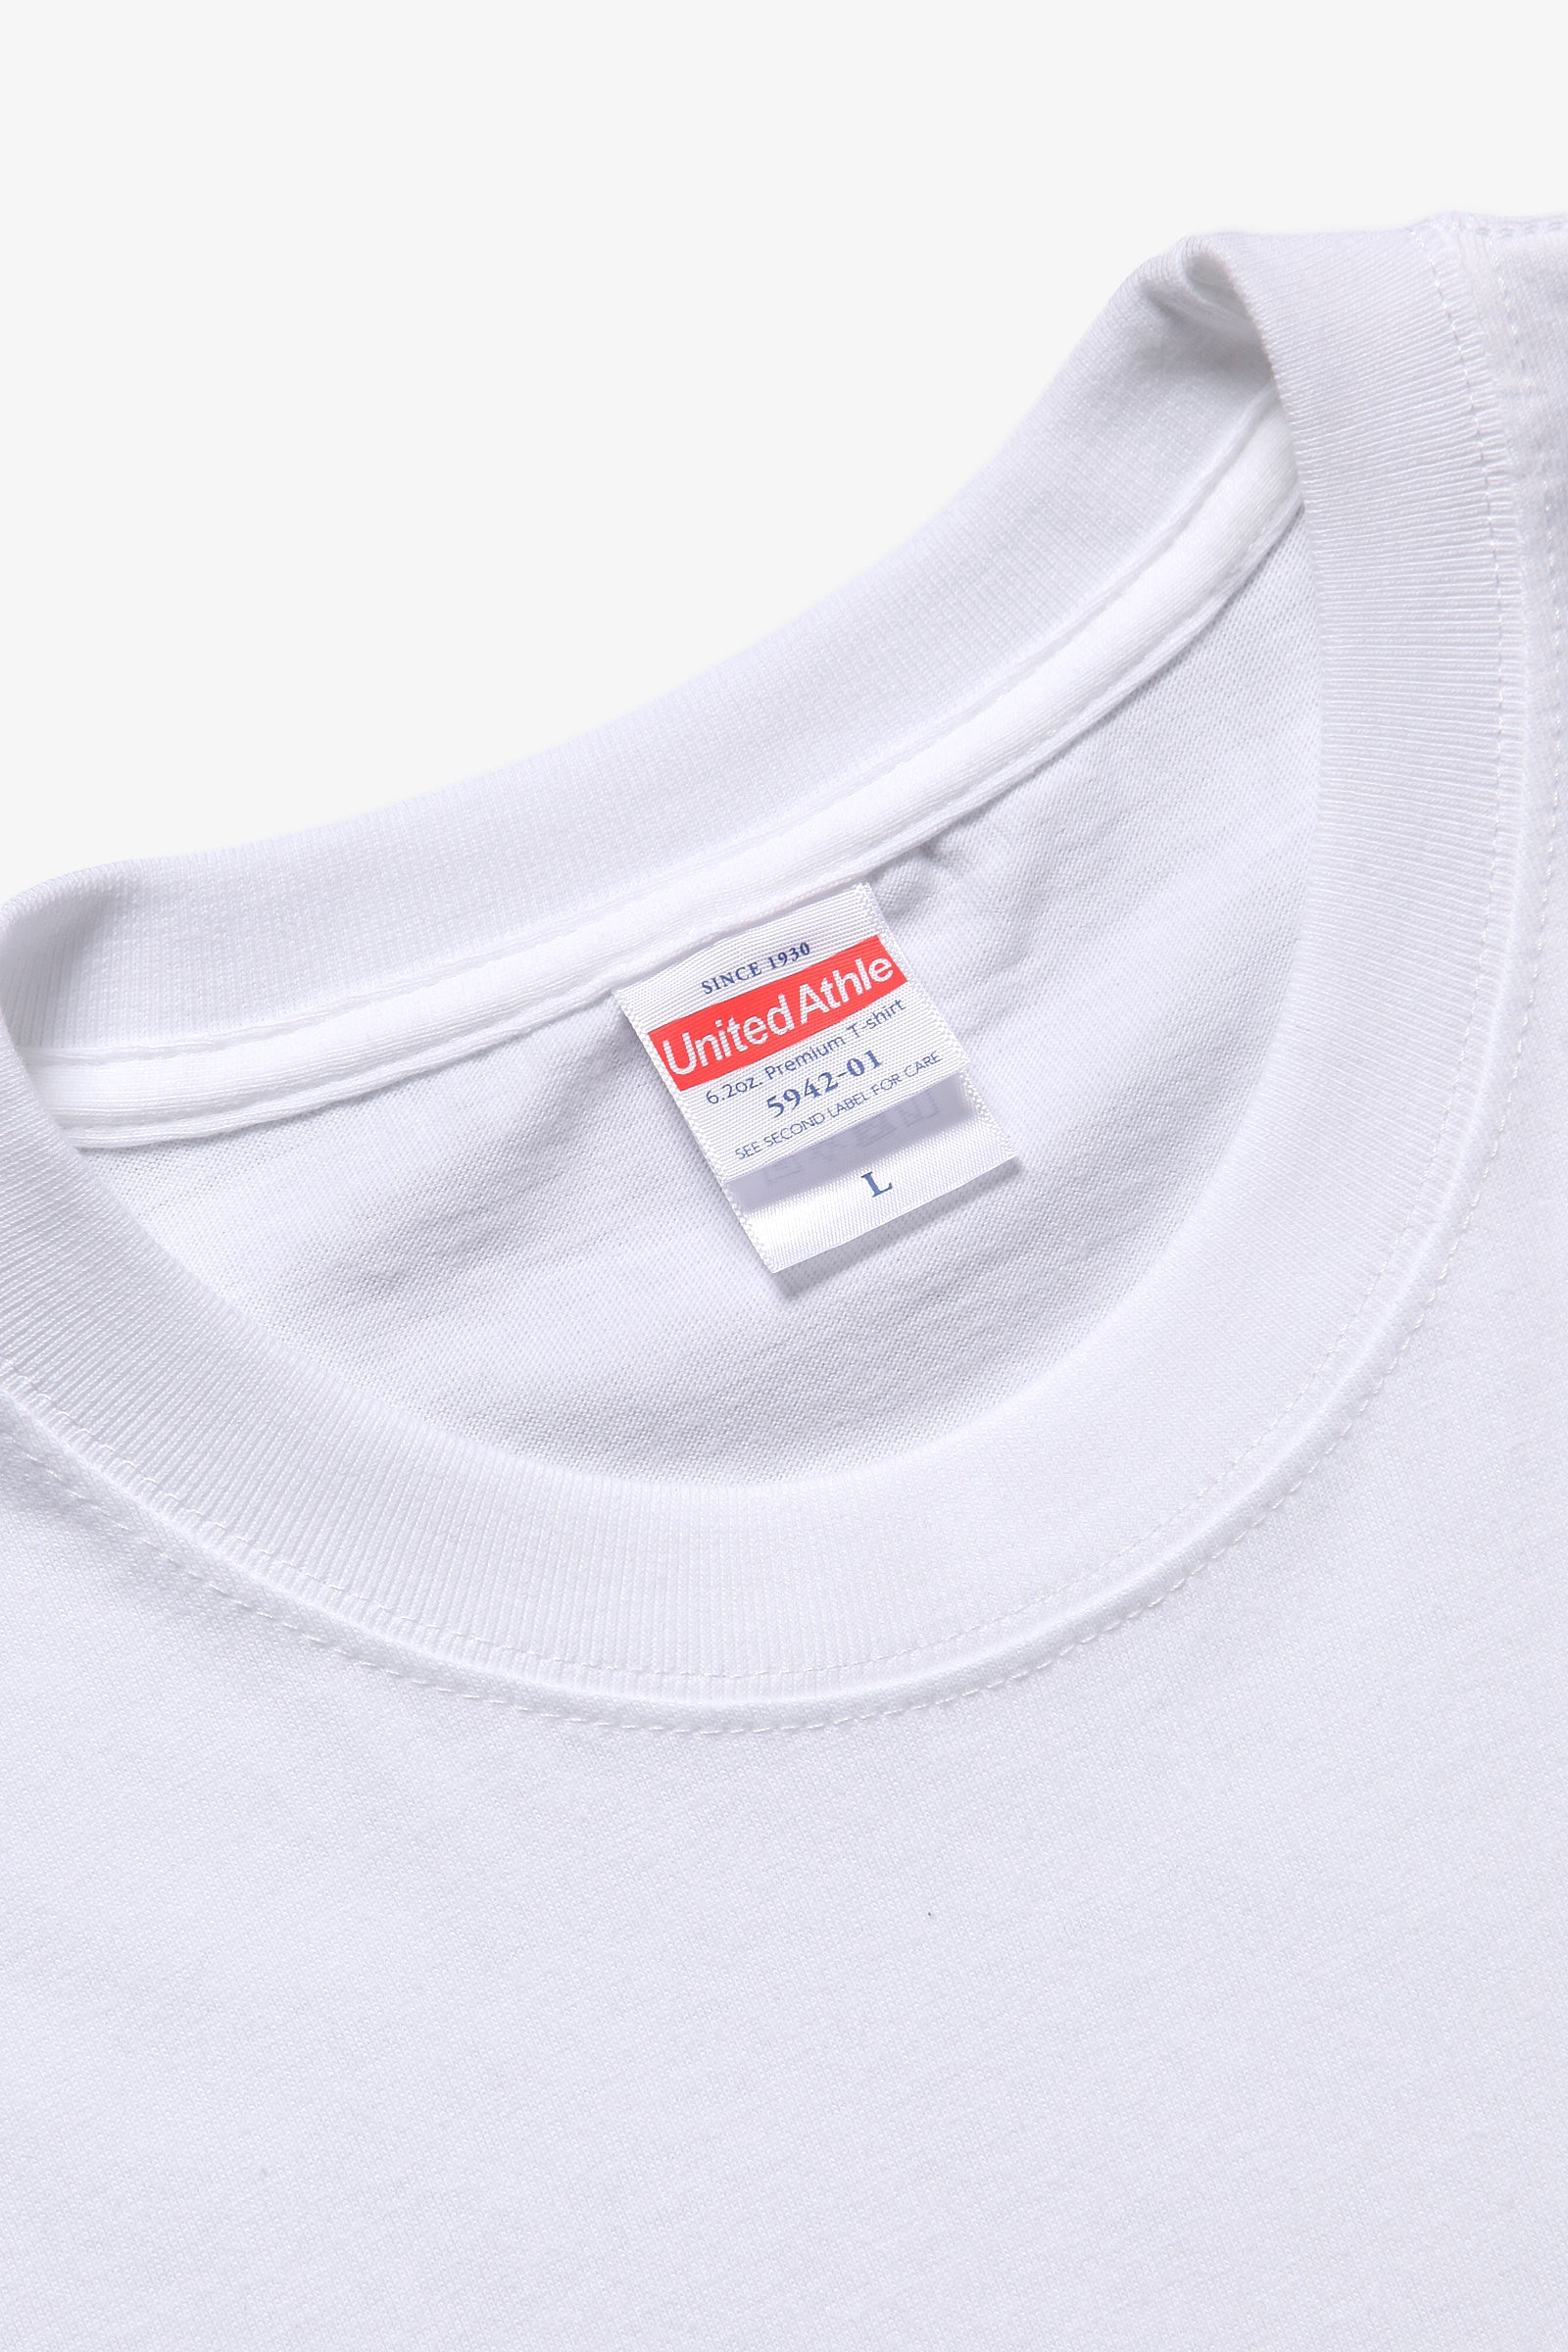 United Athle - 5942 6.2oz Premium T-Shirt - White